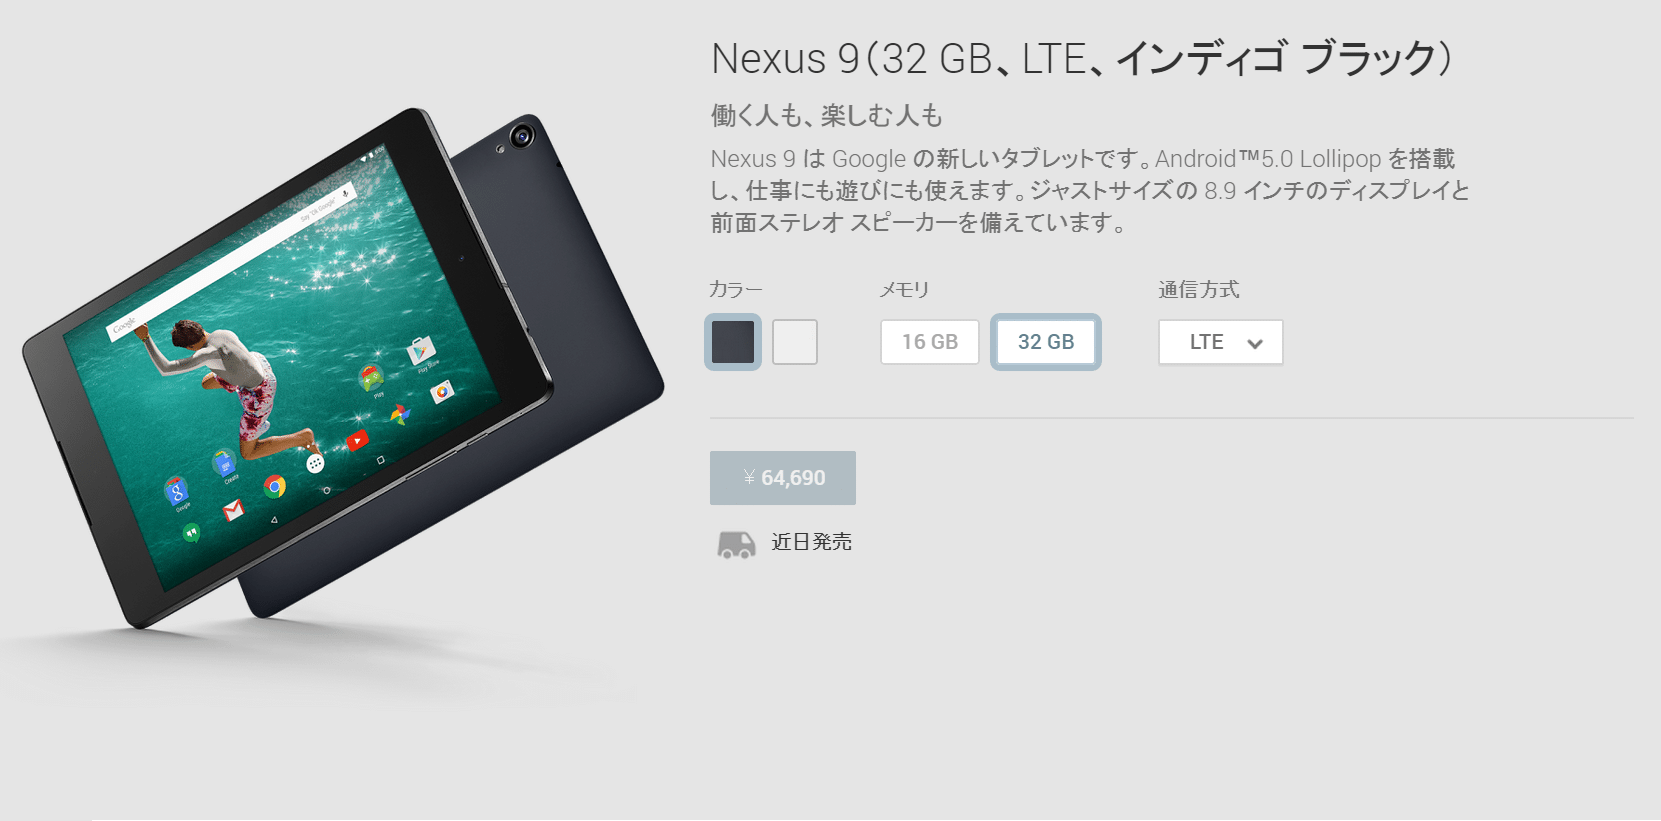 Nexus9 LTE SIMフリーモデルがAmazon.co.jpで1月11日に発売。対応周波数に関する注意点など。